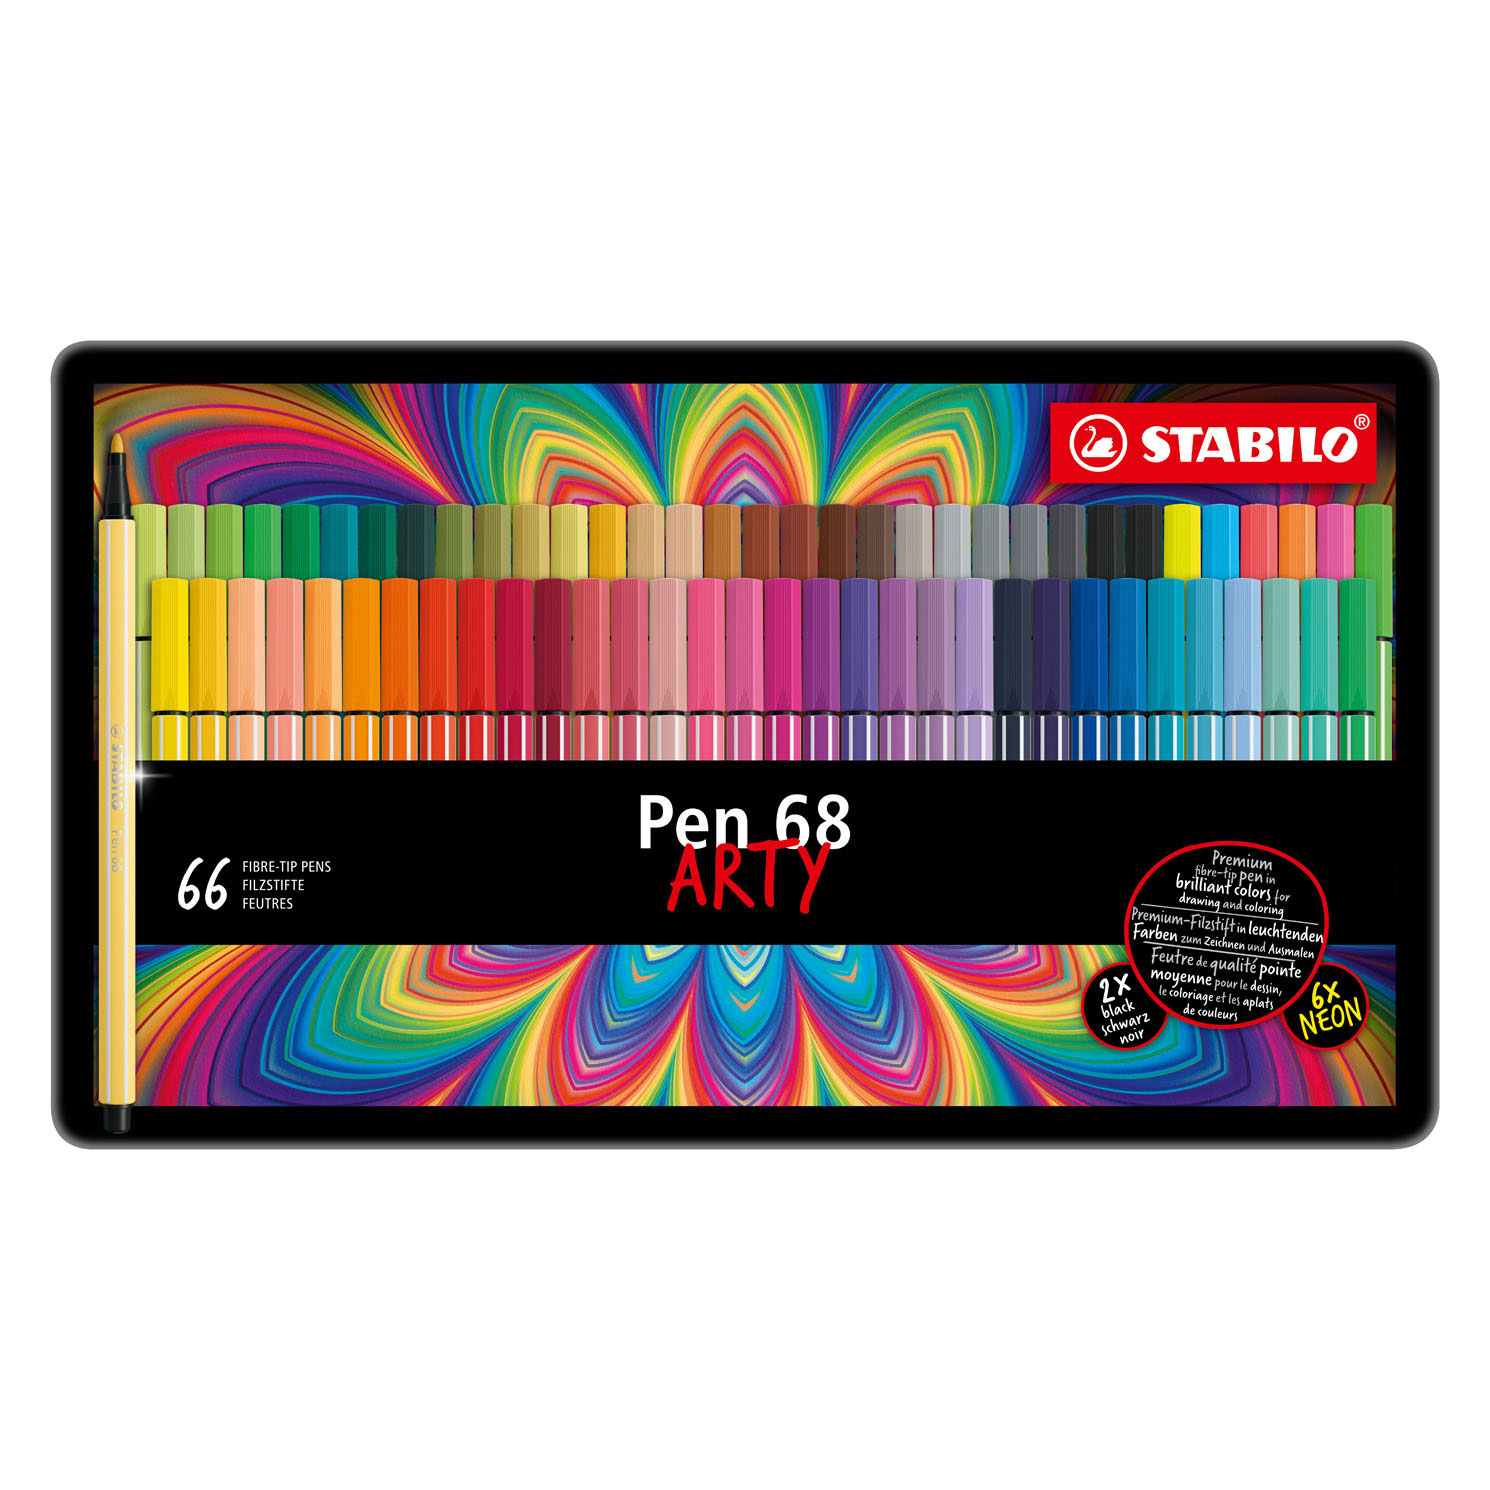 STABILO® Pen 68 - Brush - Tin 15 Pack